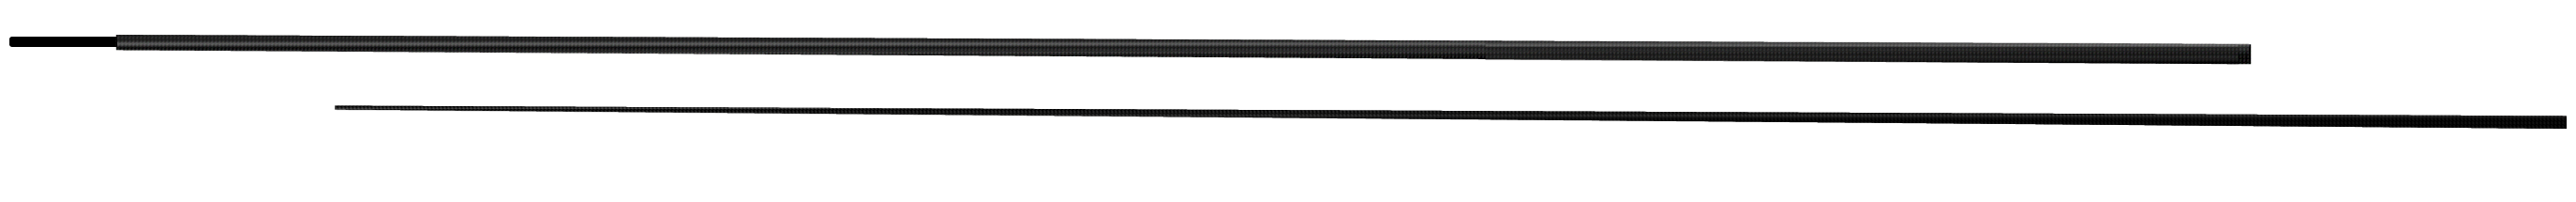 3 x Harrison Torrix Custom Built Carp Rods. Rare Brown Blanks. 12